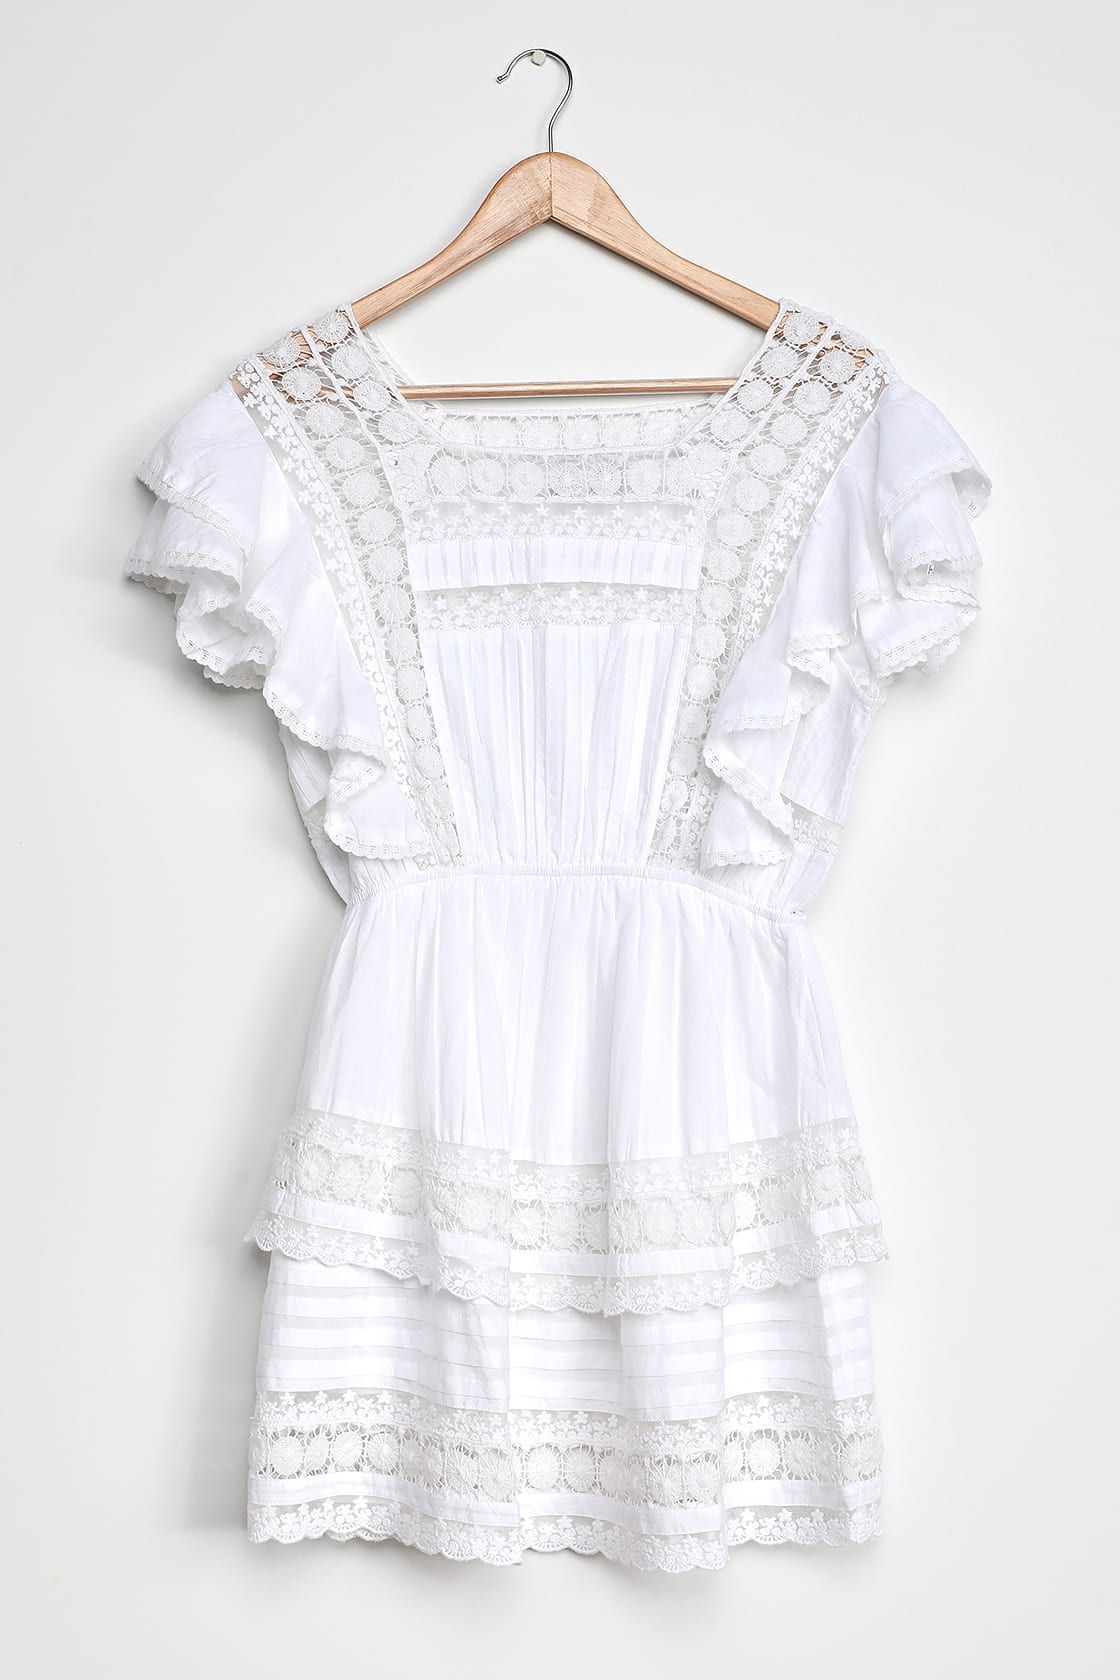 Sunny Smile Ruffled Lace Mini Dress | Lulus (US)